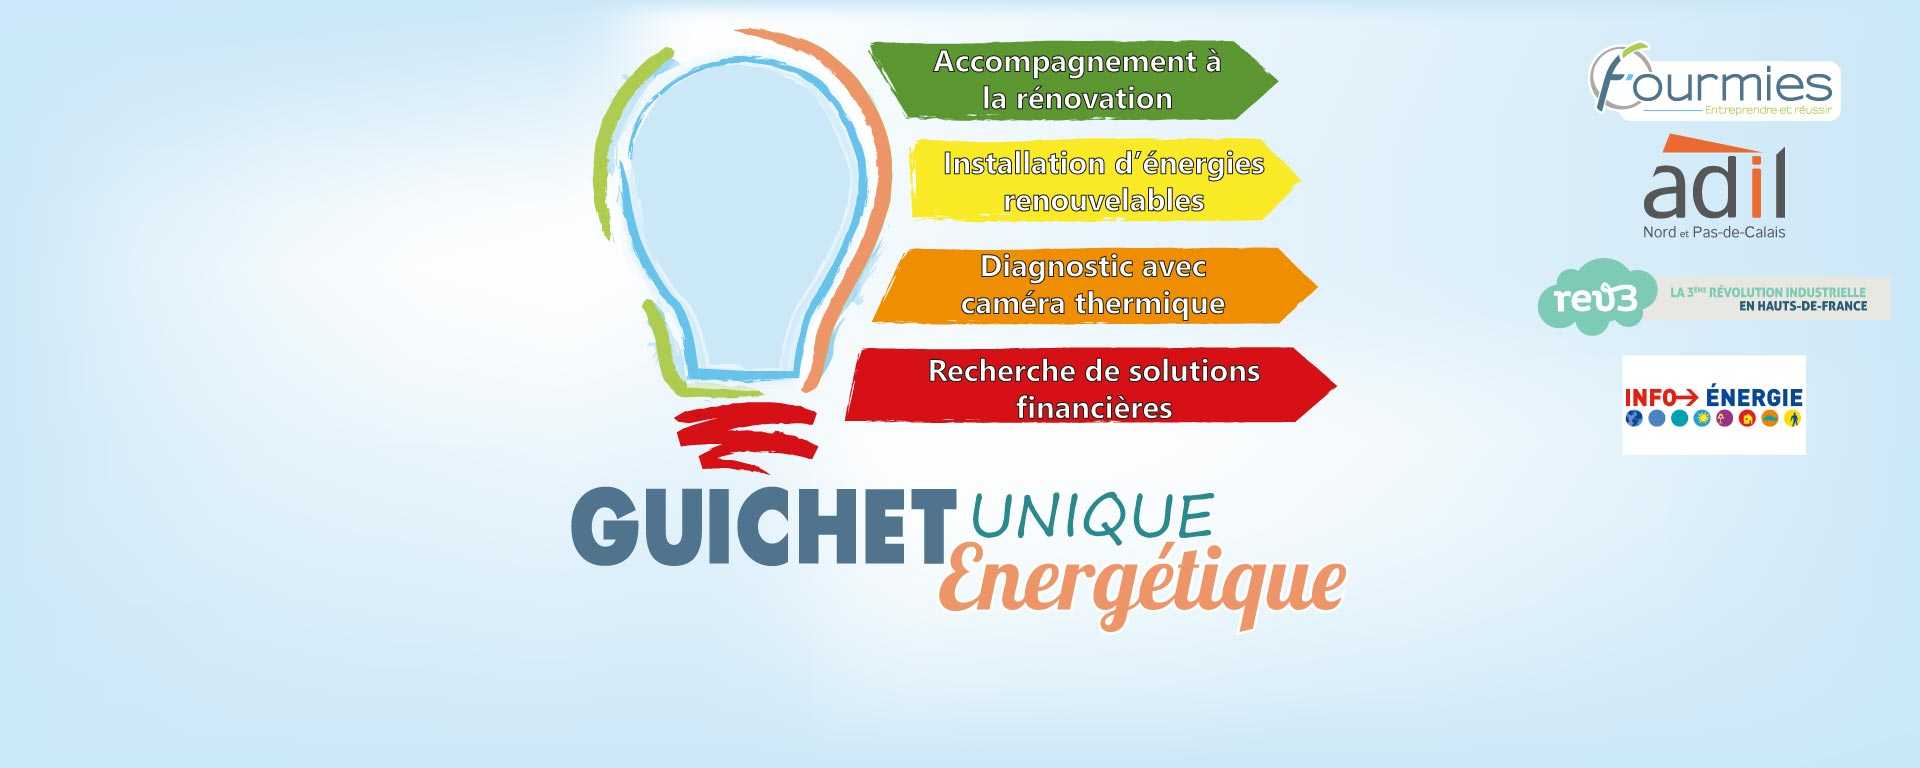 Guichet Unique Energétique